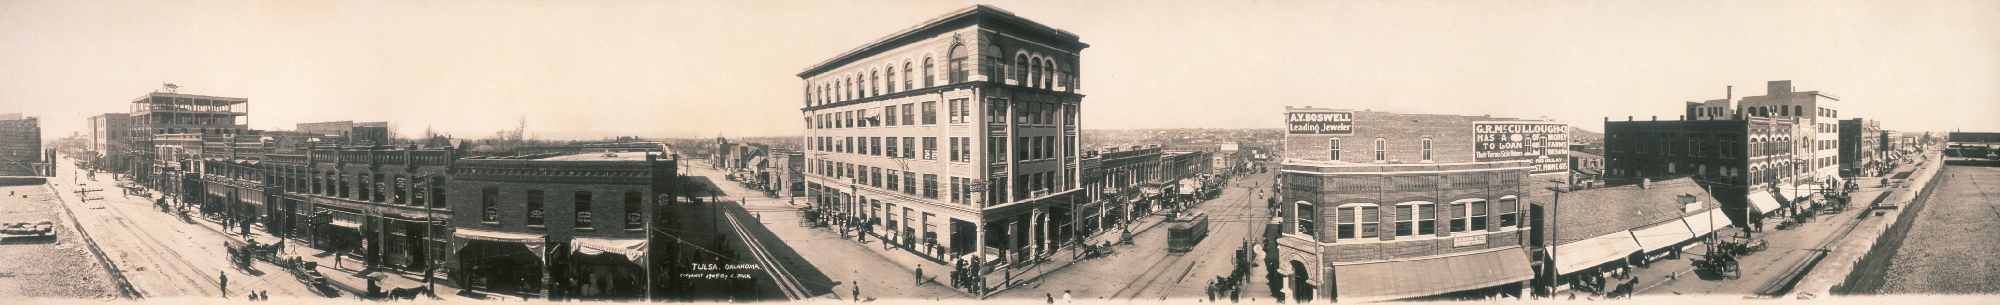 Tulsa Panorama 1909 a